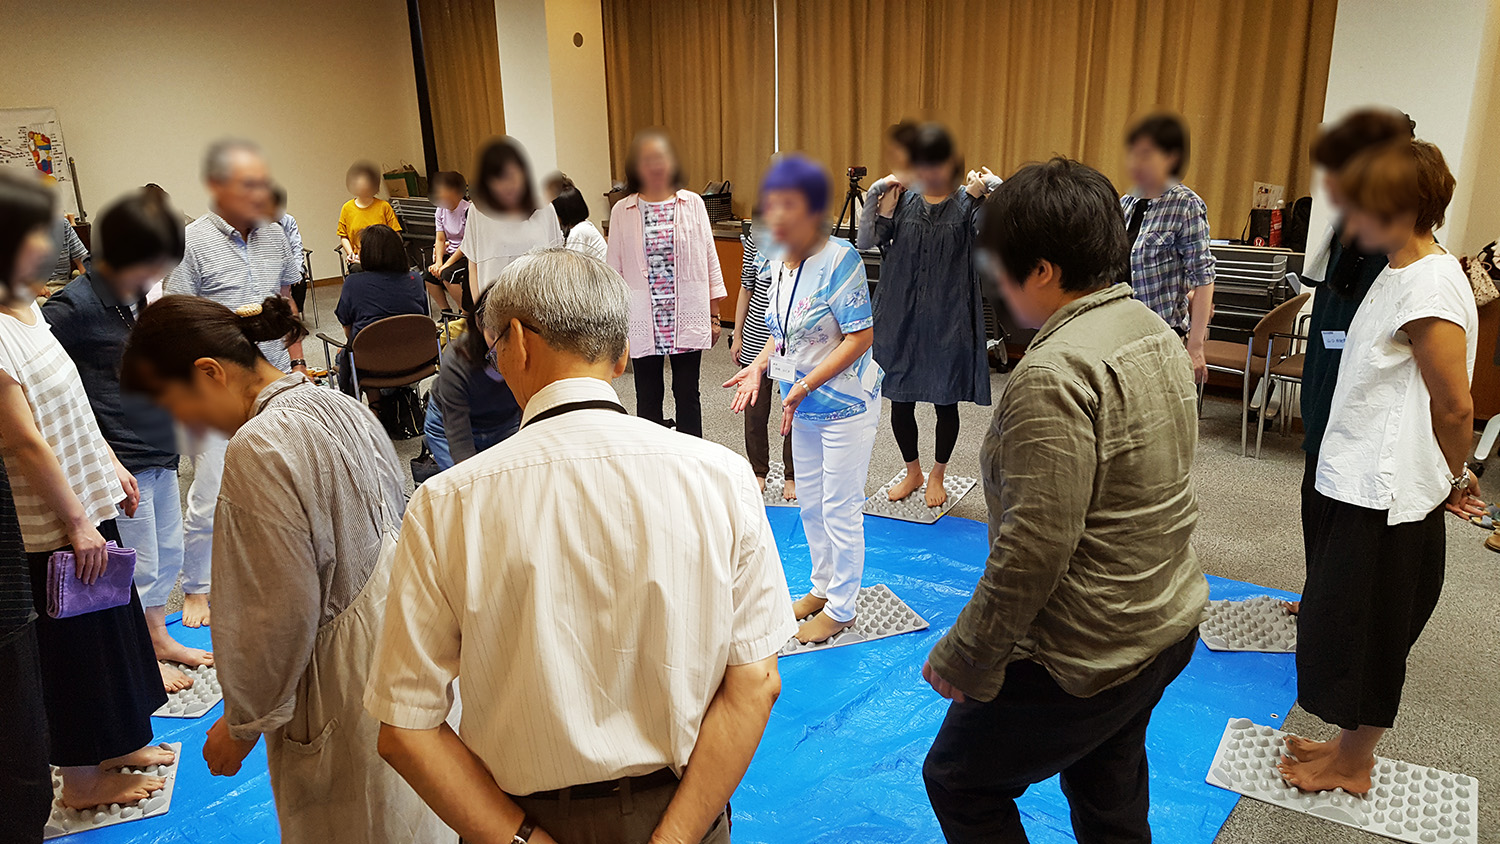 官足法福岡講習会を開催しました。